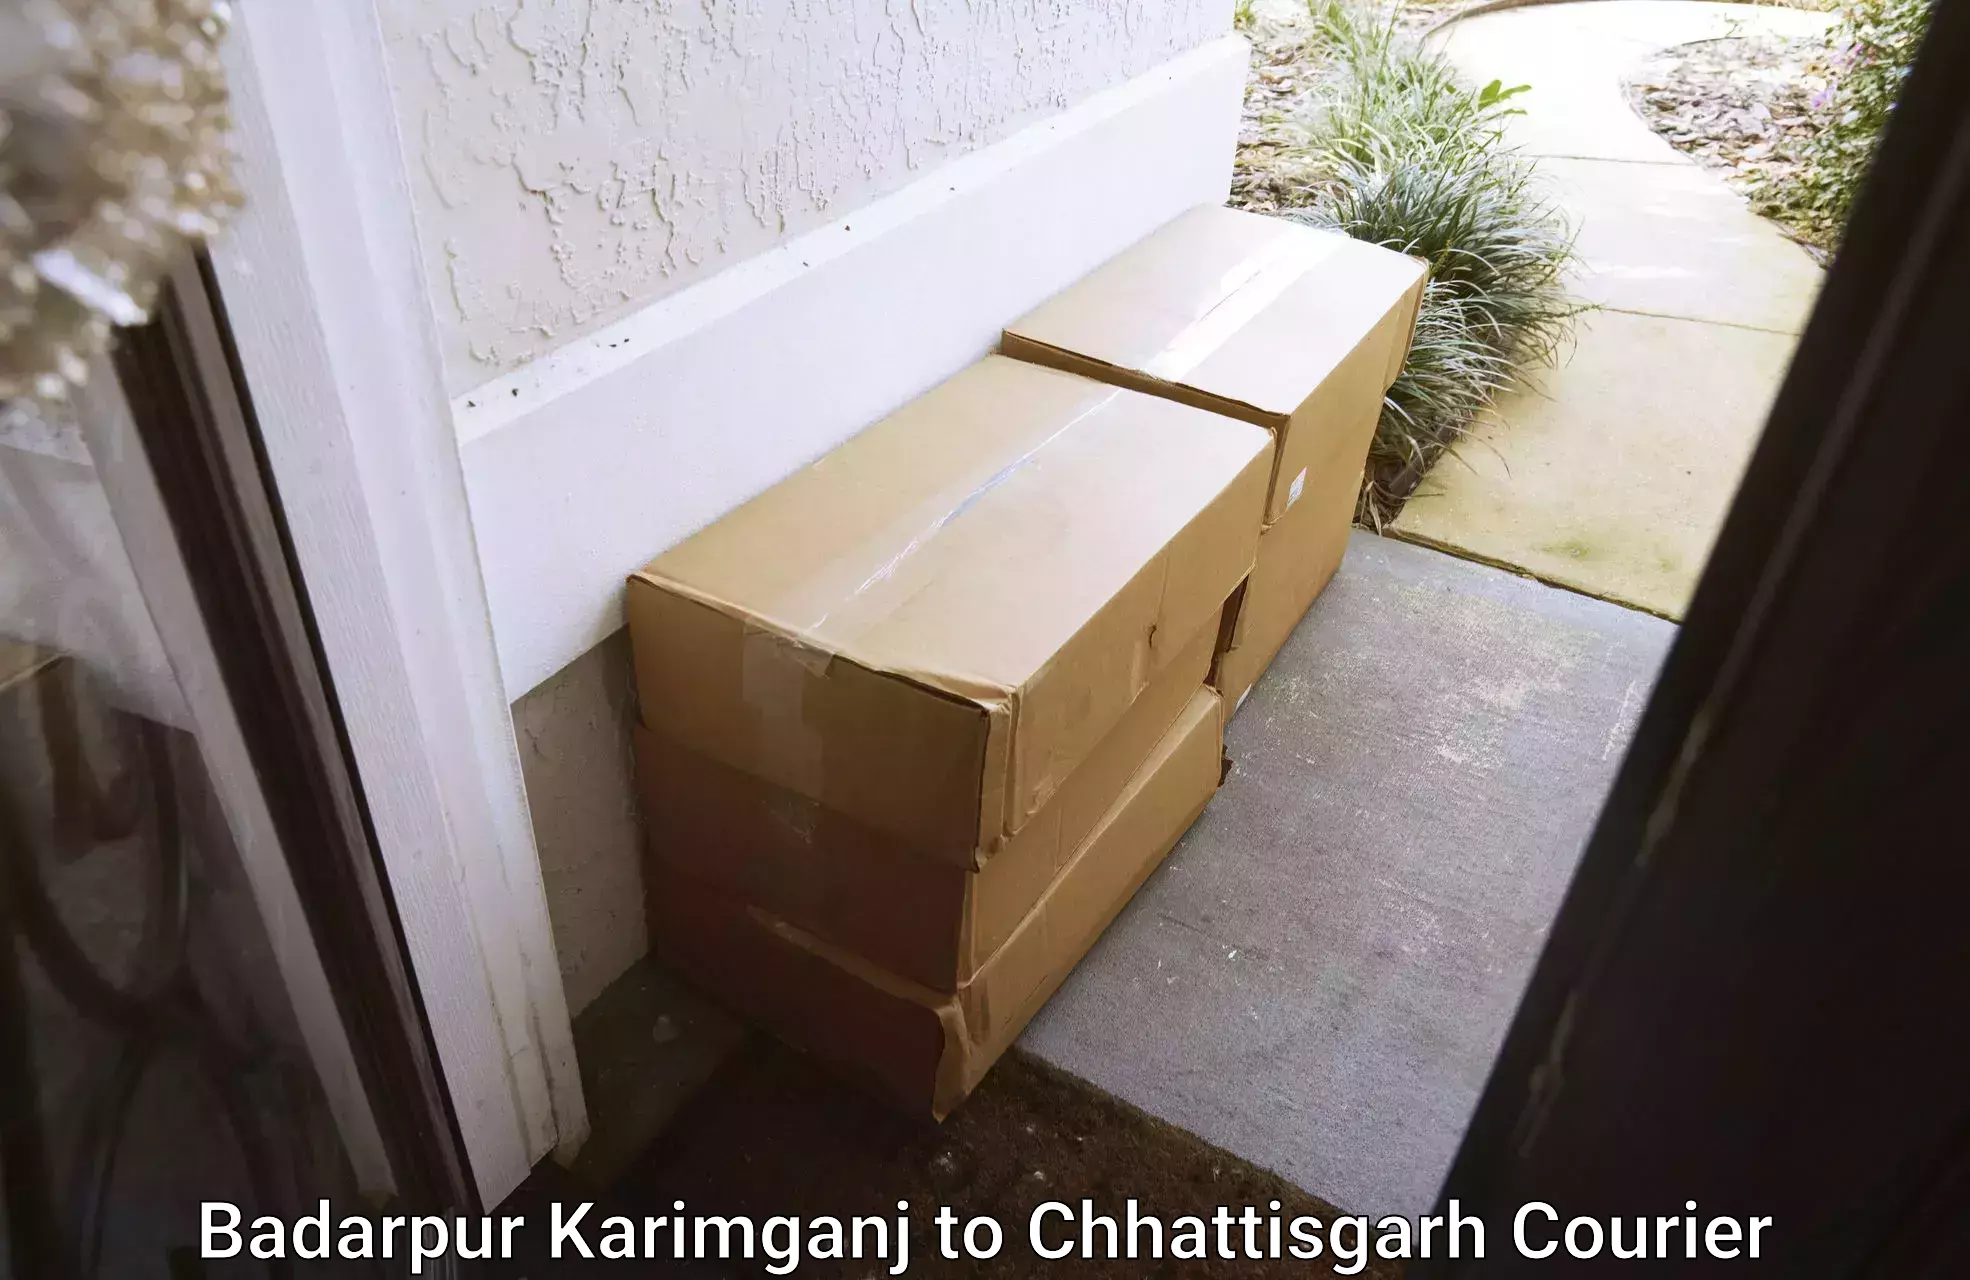 Global parcel delivery Badarpur Karimganj to Patna Chhattisgarh